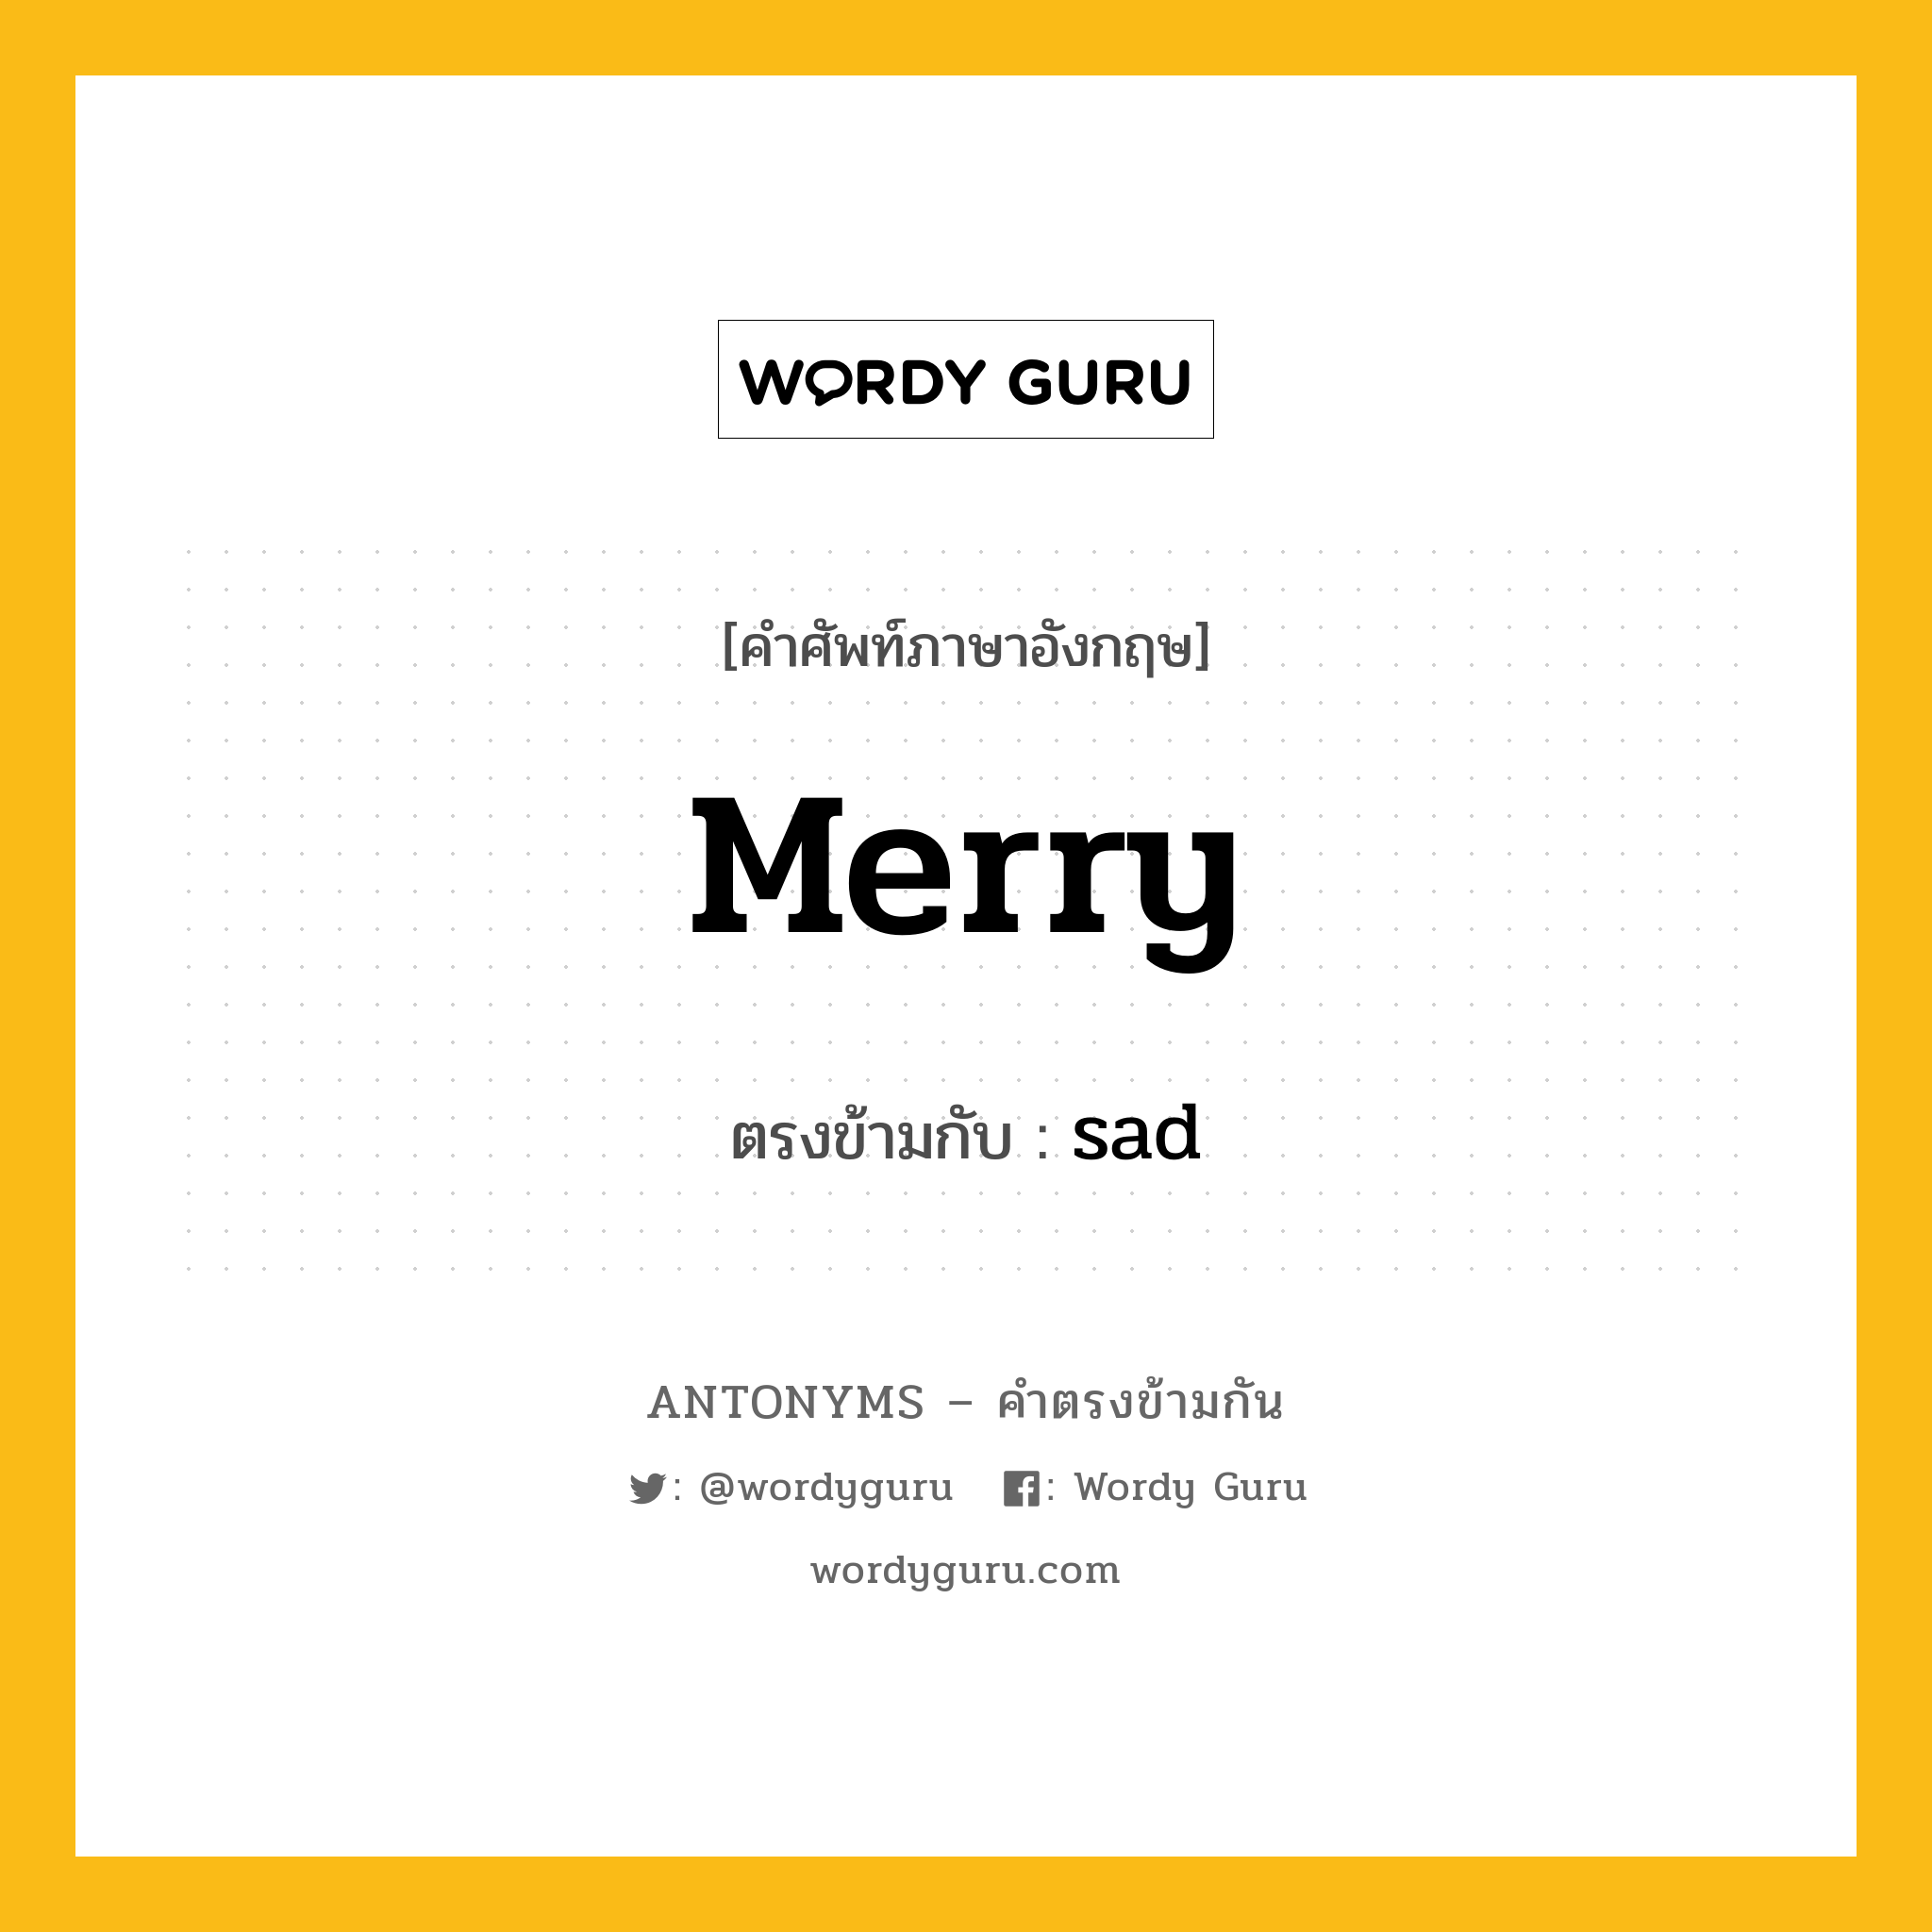 merry เป็นคำตรงข้ามกับคำไหนบ้าง?, คำศัพท์ภาษาอังกฤษ merry ตรงข้ามกับ sad หมวด sad